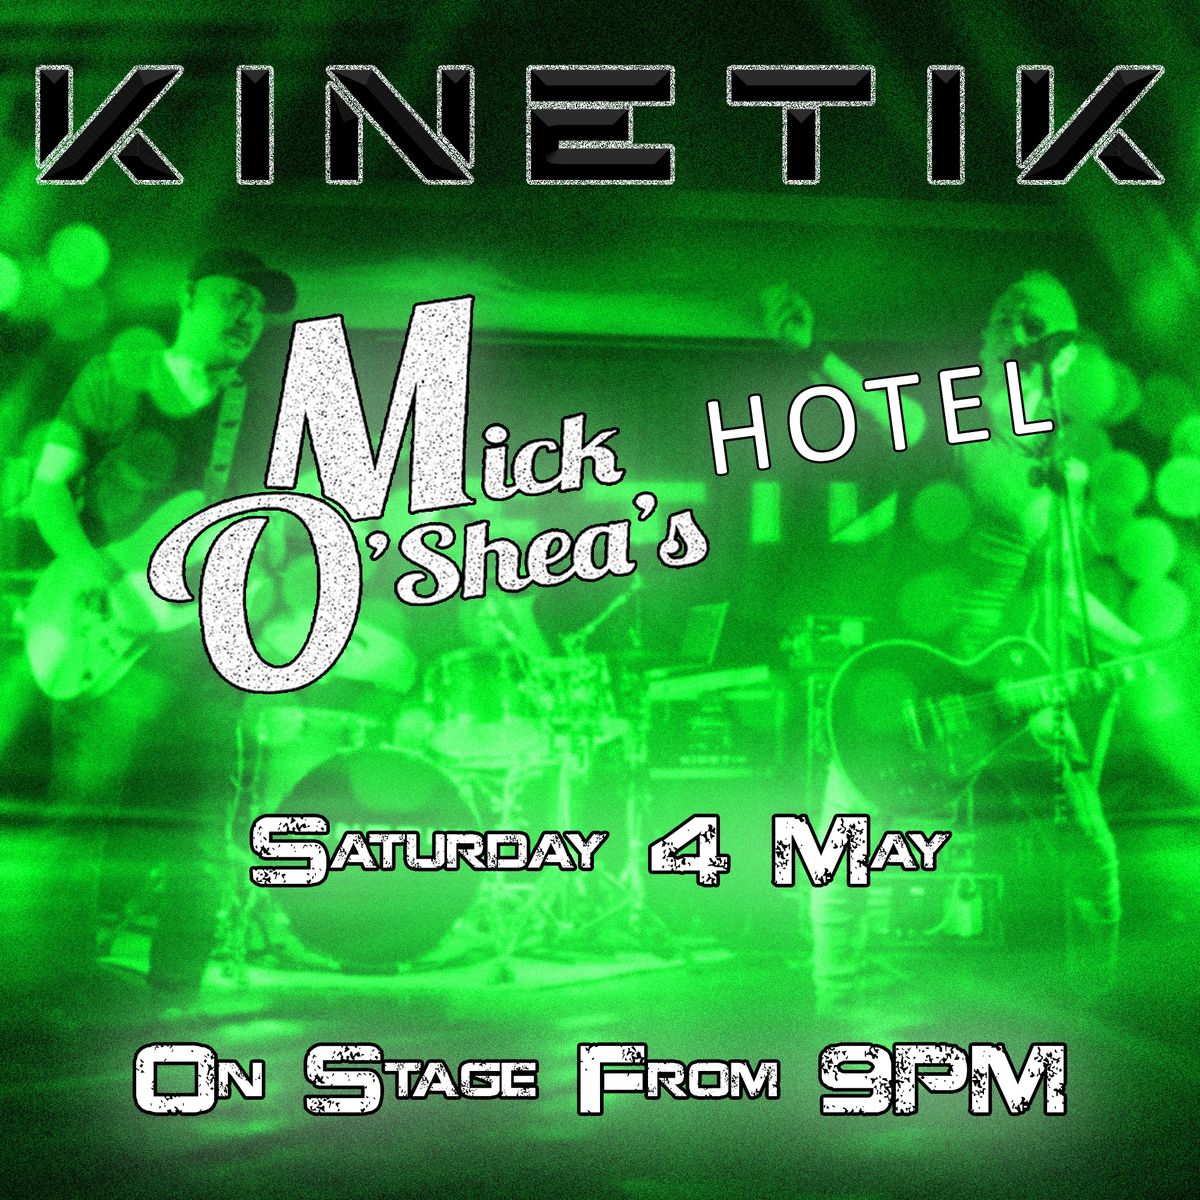 Kinetik action at Mick O'Shea's